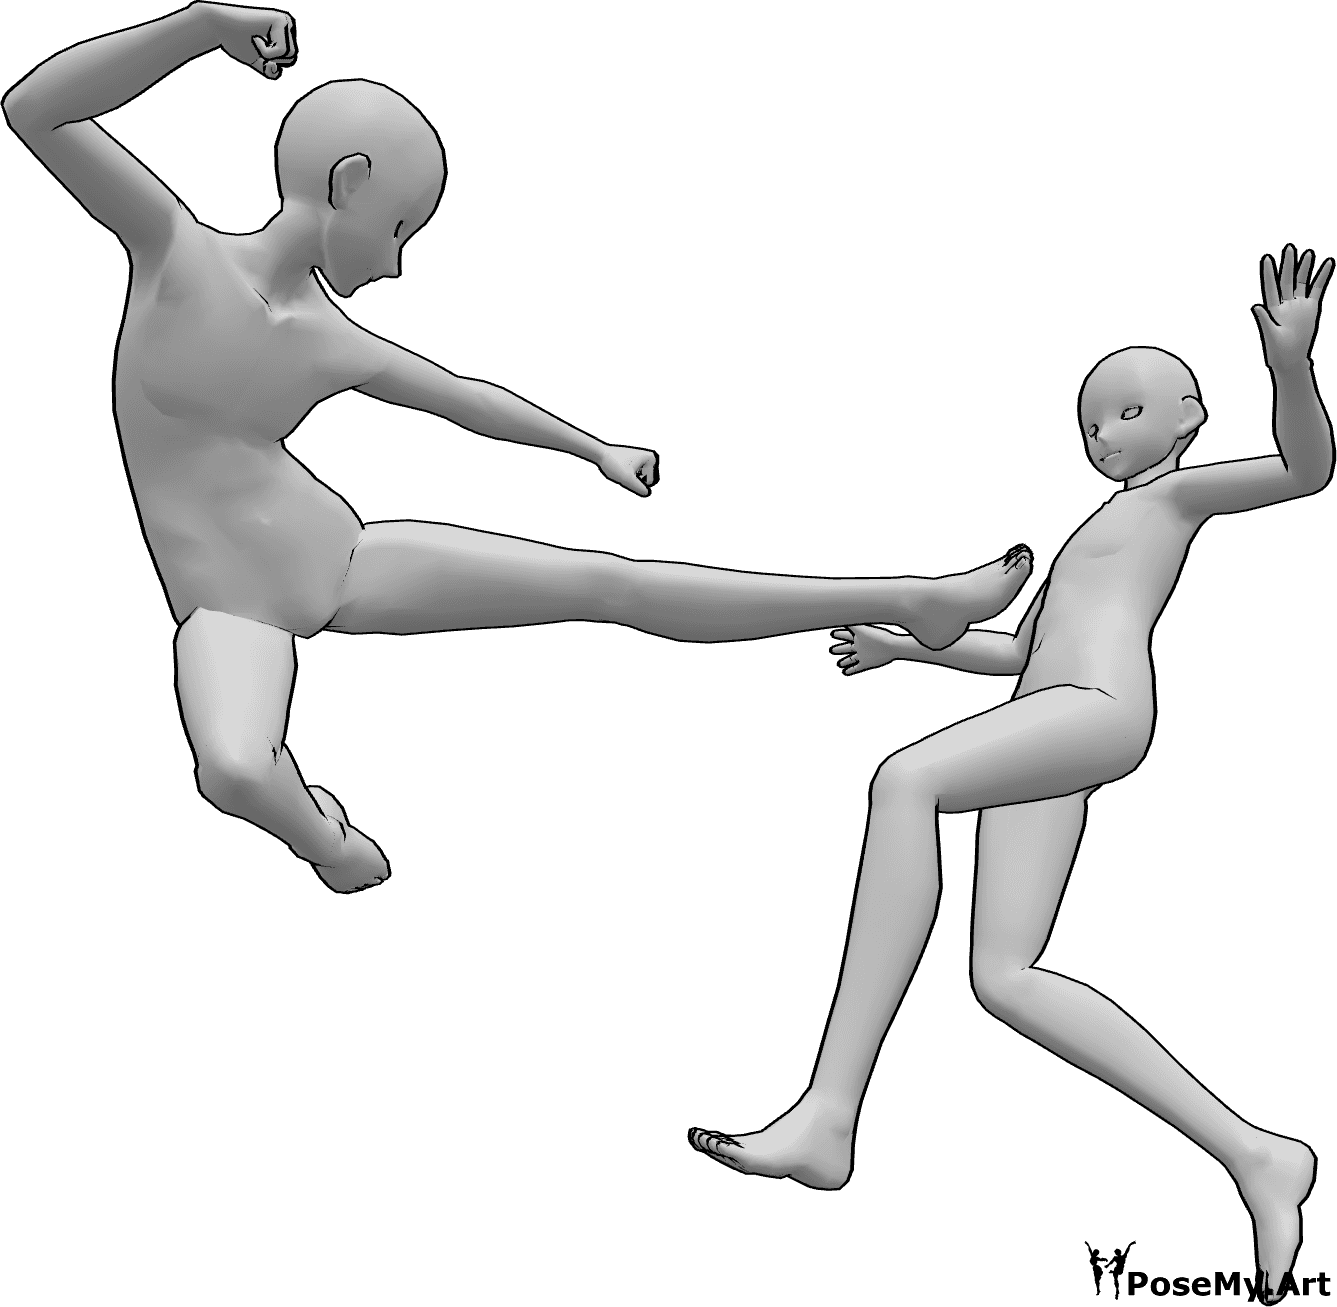 Riferimento alle pose- Anime che combattono in posa da calci - I maschi di Anime stanno combattendo, uno di loro salta in alto per eseguire un calcio laterale